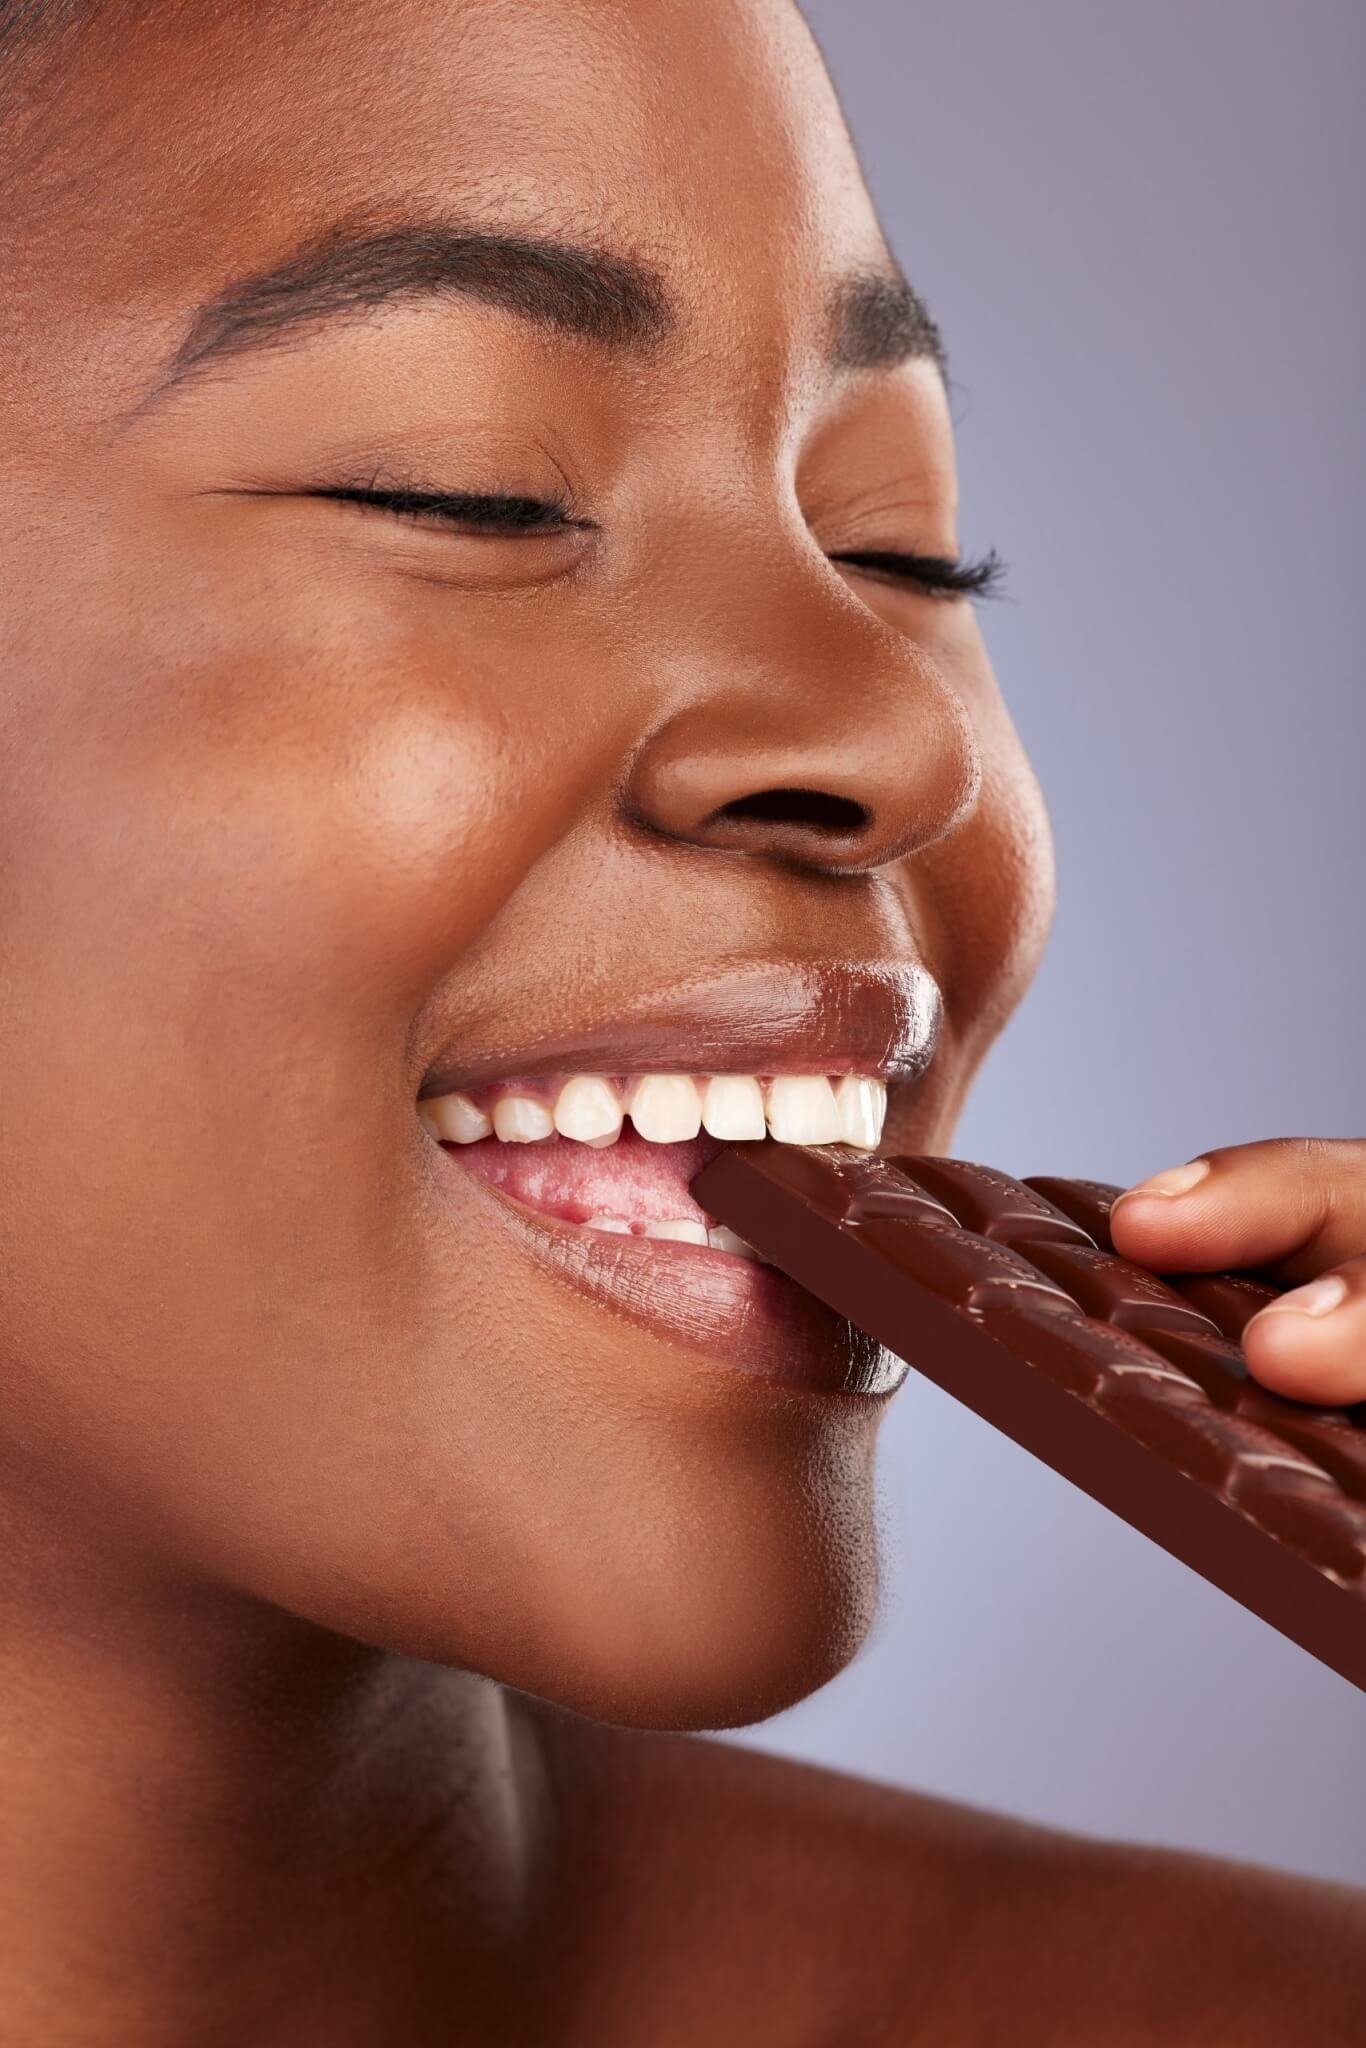 4. Chocolate amargo e meio amargo são melhores para pele? Verdade. Chocolate com mais de 50% de cacau e o padrão ouro (com mais de 70%) fornecem os benefícios antioxidantes dos flavonoides do cacau e podem ser ricos em vitamina C e E, cálcio, fósforo, ferro, potássio e sódio. “Essa é realmente a melhor opção, já que traz menos quantidade de carboidratos e açúcar, além de contar com ação antioxidante e anti-inflamatória [...]”, afirma a dermatologista. Reprodução: EdiCase